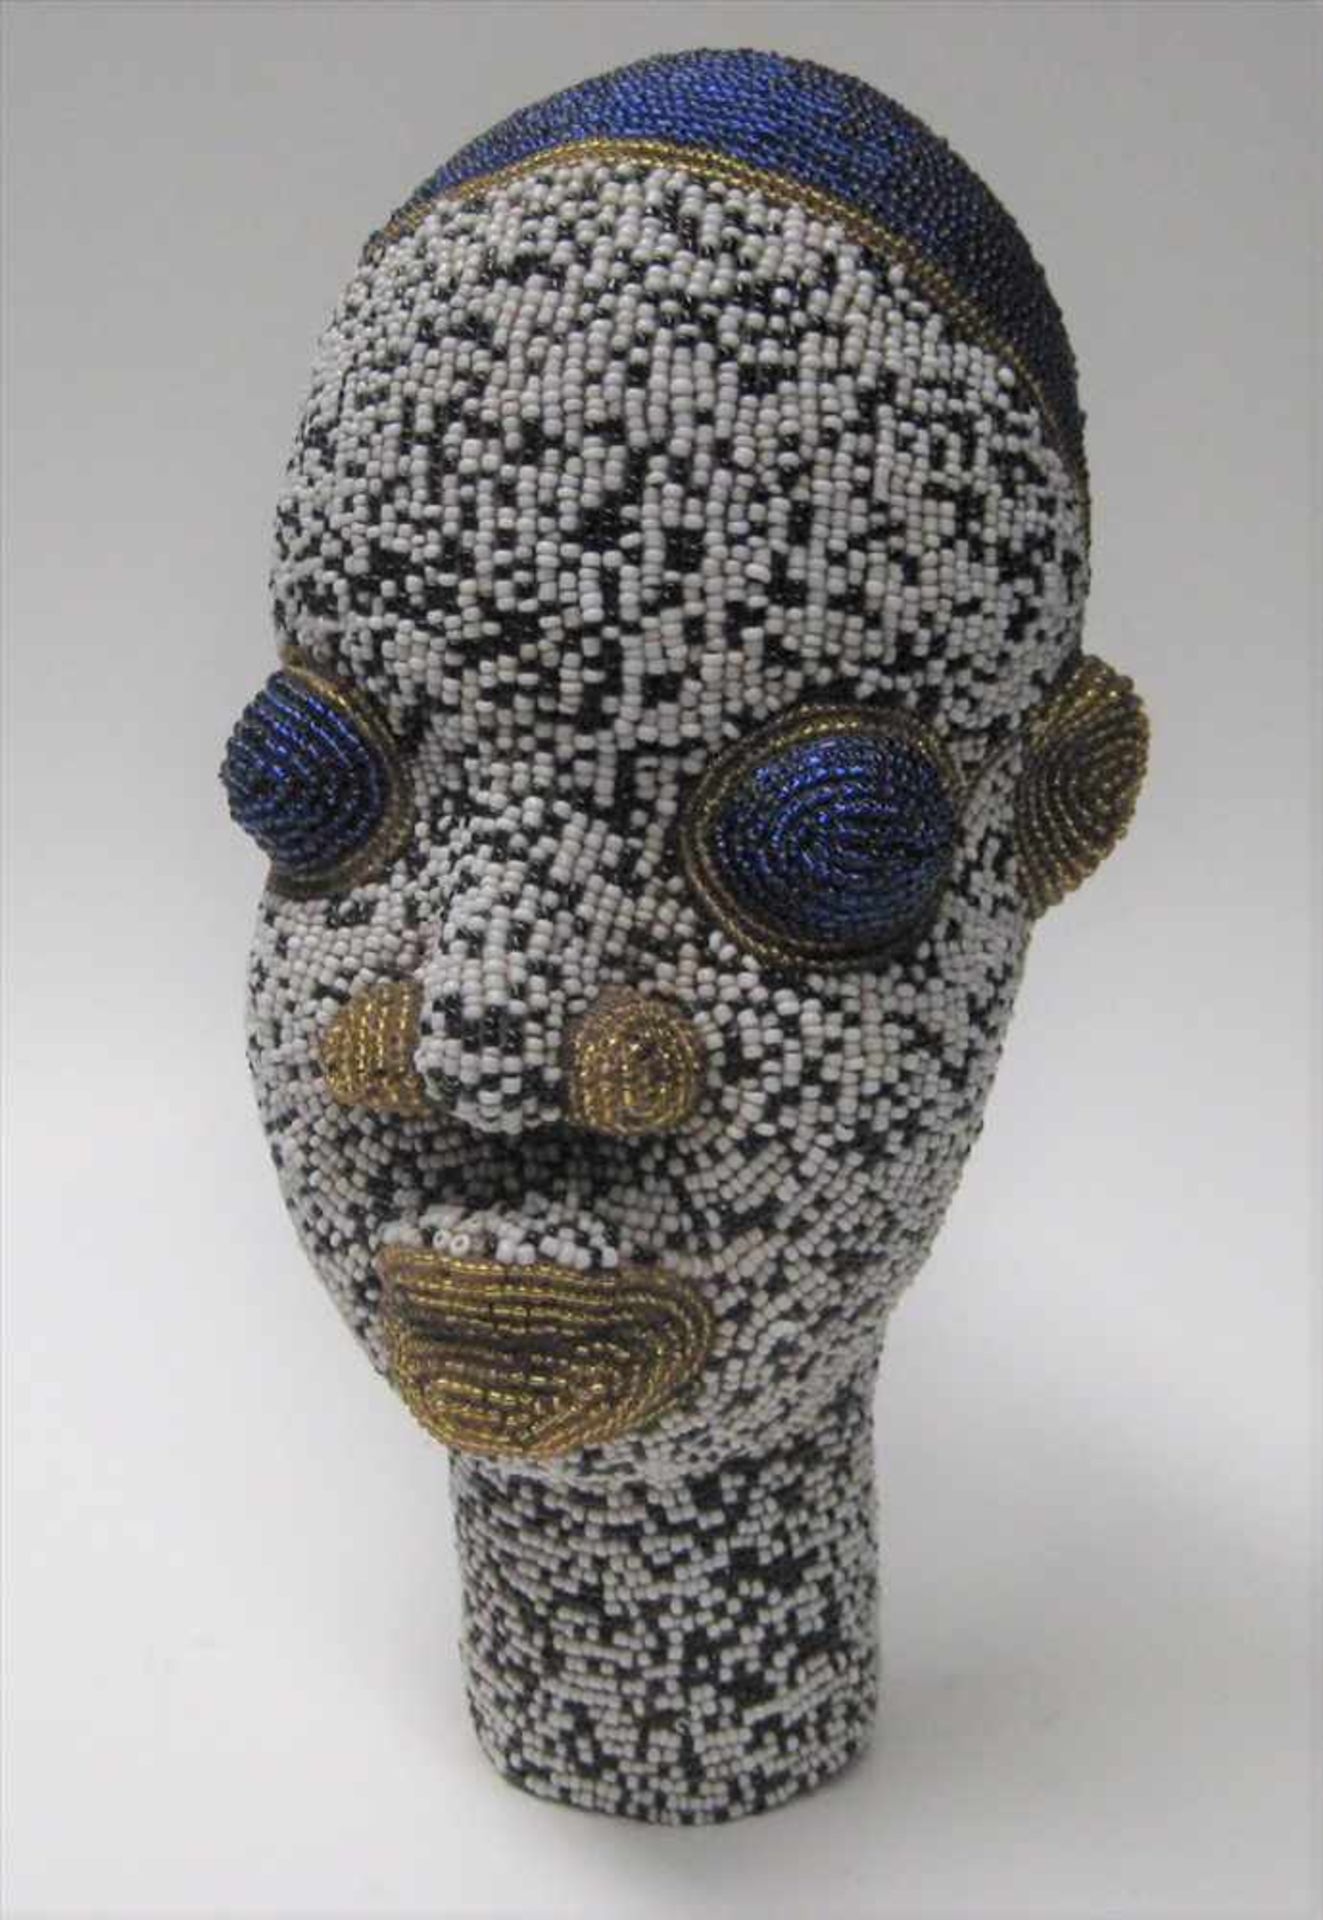 Kopf einer Afrikanerin, Ton geformt, umlaufender, farbiger Glasperlenbesatz, h 25 cm, d 14 cm.